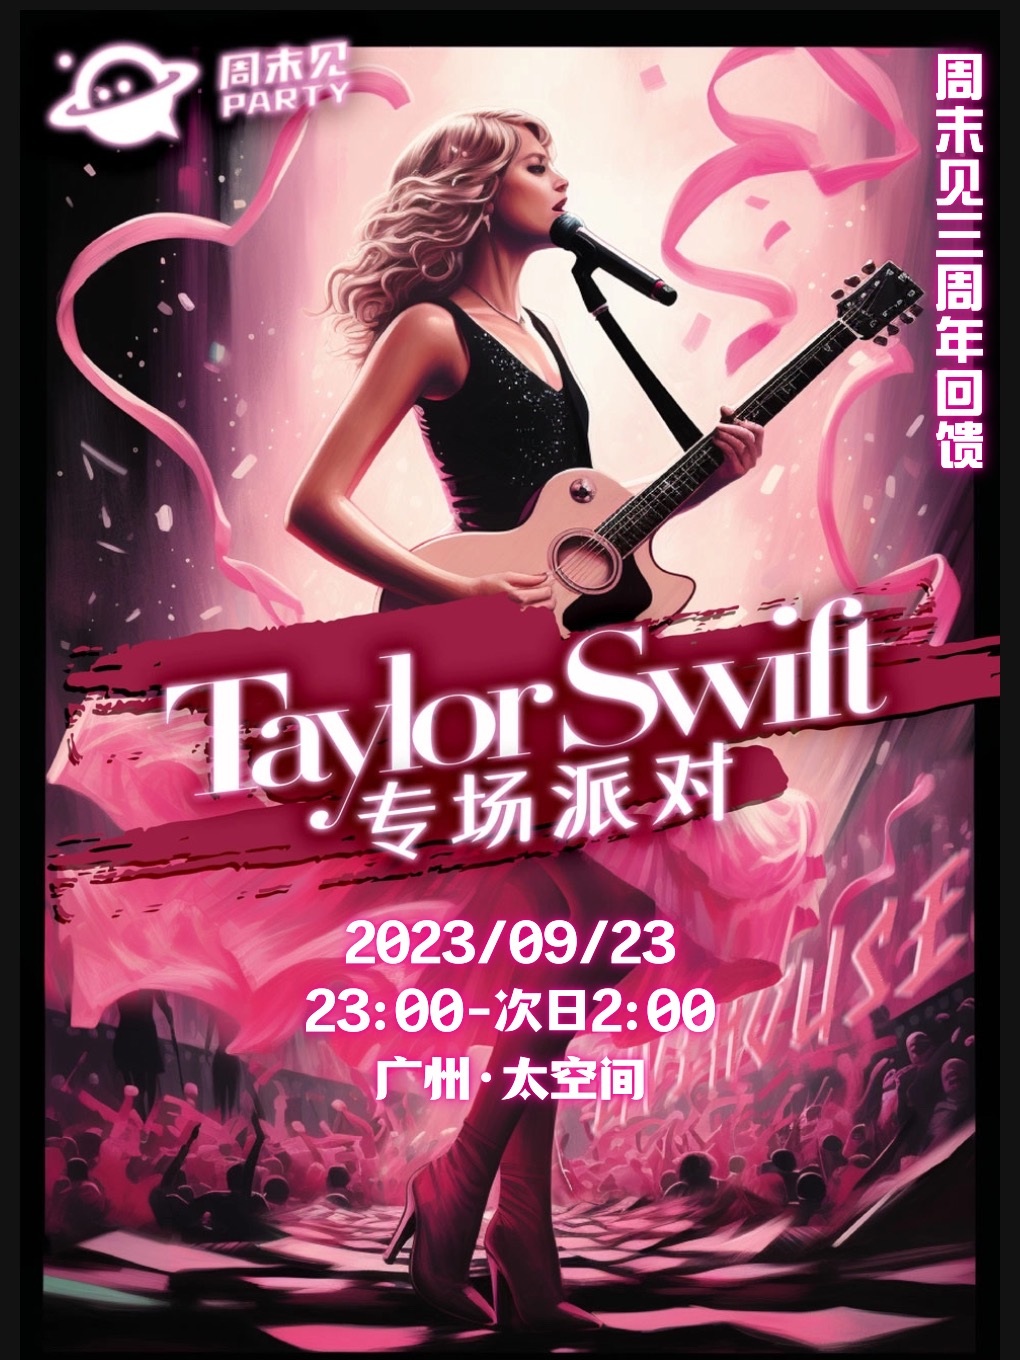 广州Taylor Swift专场派对8.0 现场送新加坡演唱会门票 @周末见三周年回馈